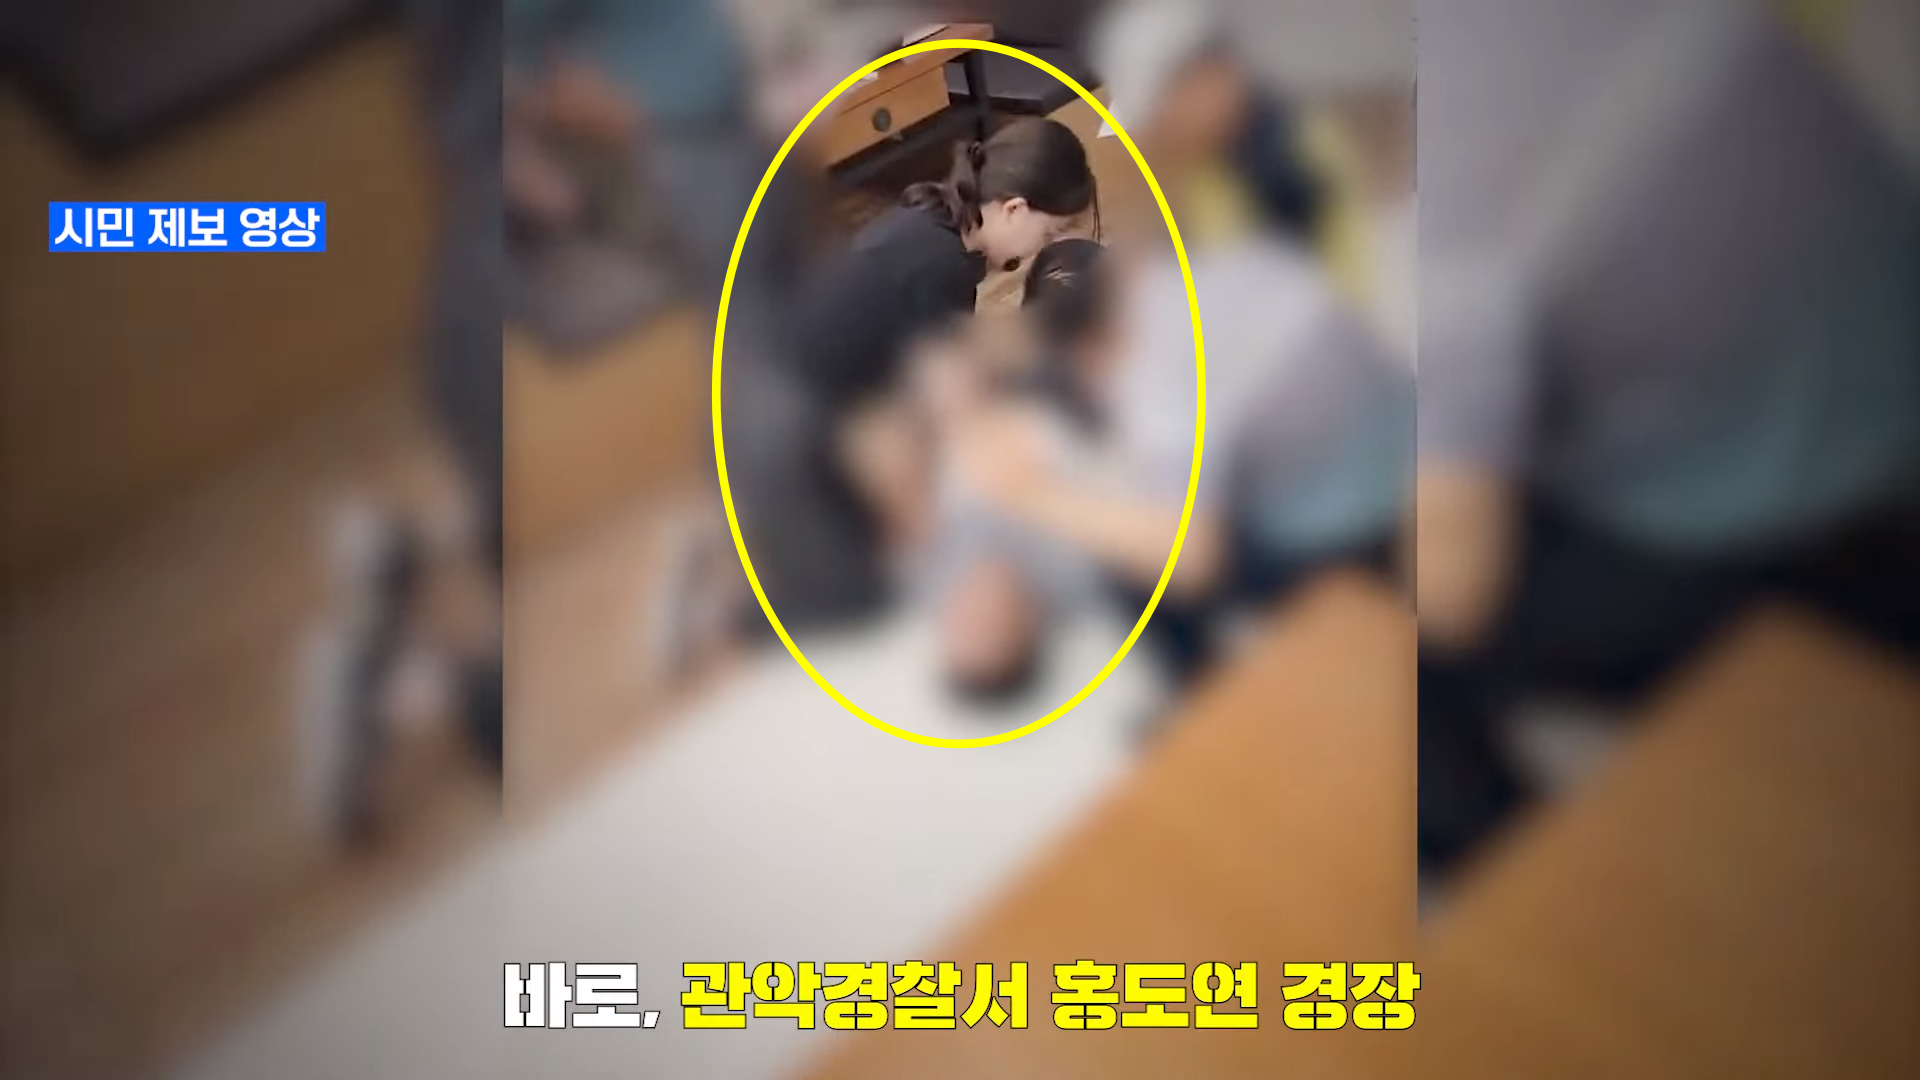 지난달 22일 서울 영등포구 식당에서 한 남성이 급체 증상을 보이며 쓰러지자 서울 관악경찰서 소속 홍도연 경장이 심폐소생술(CPR)을 실시했다. 경찰청 유튜브